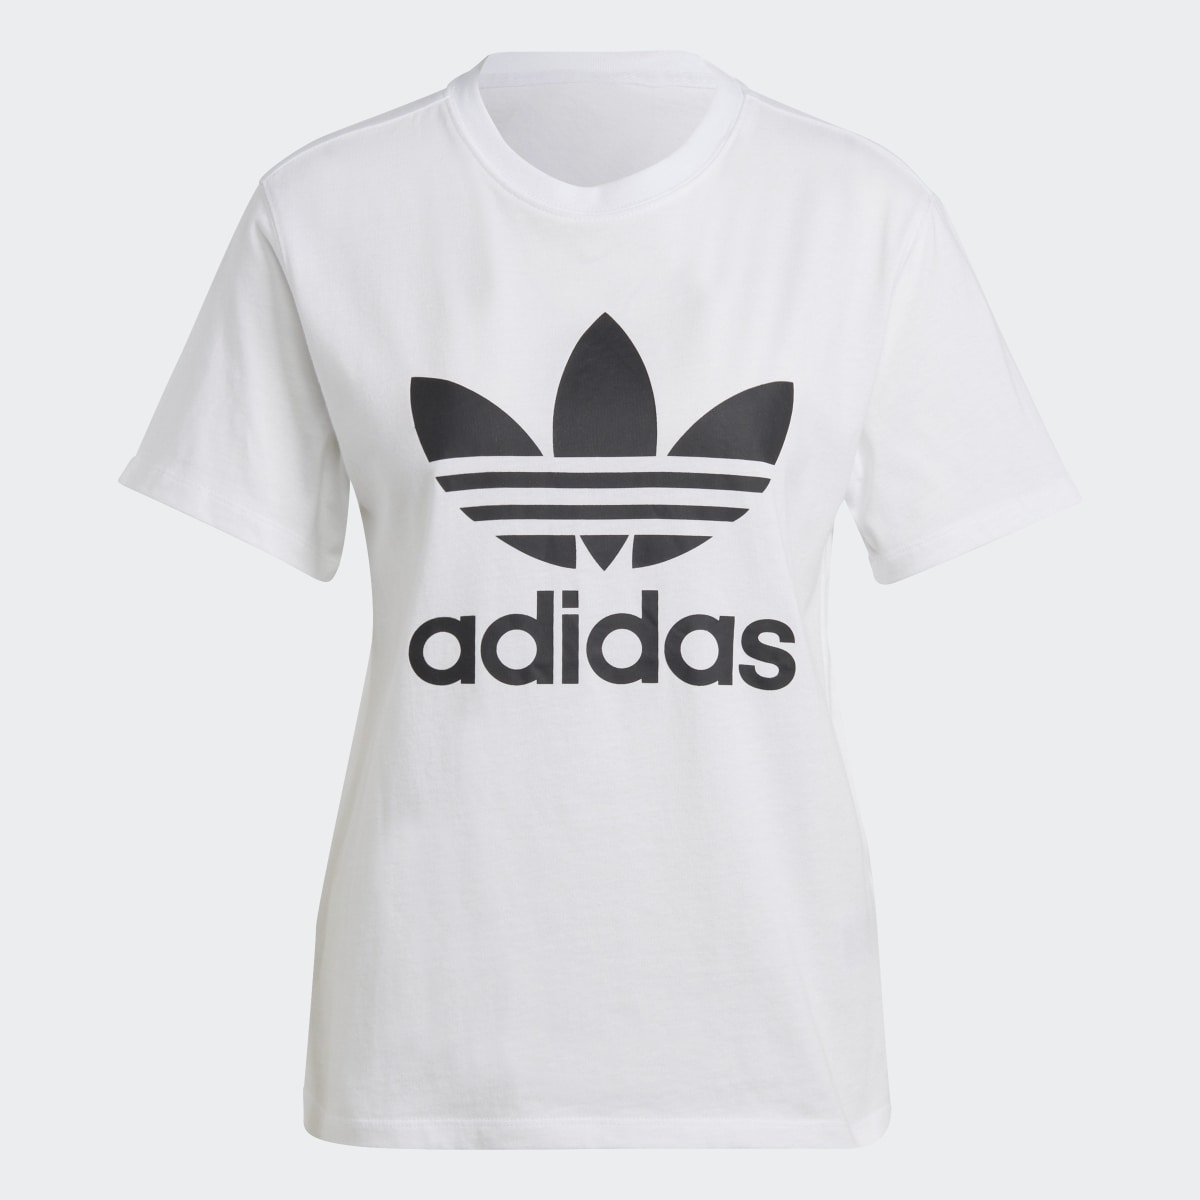 Adidas Camiseta Adicolor Classics Trefoil. 5